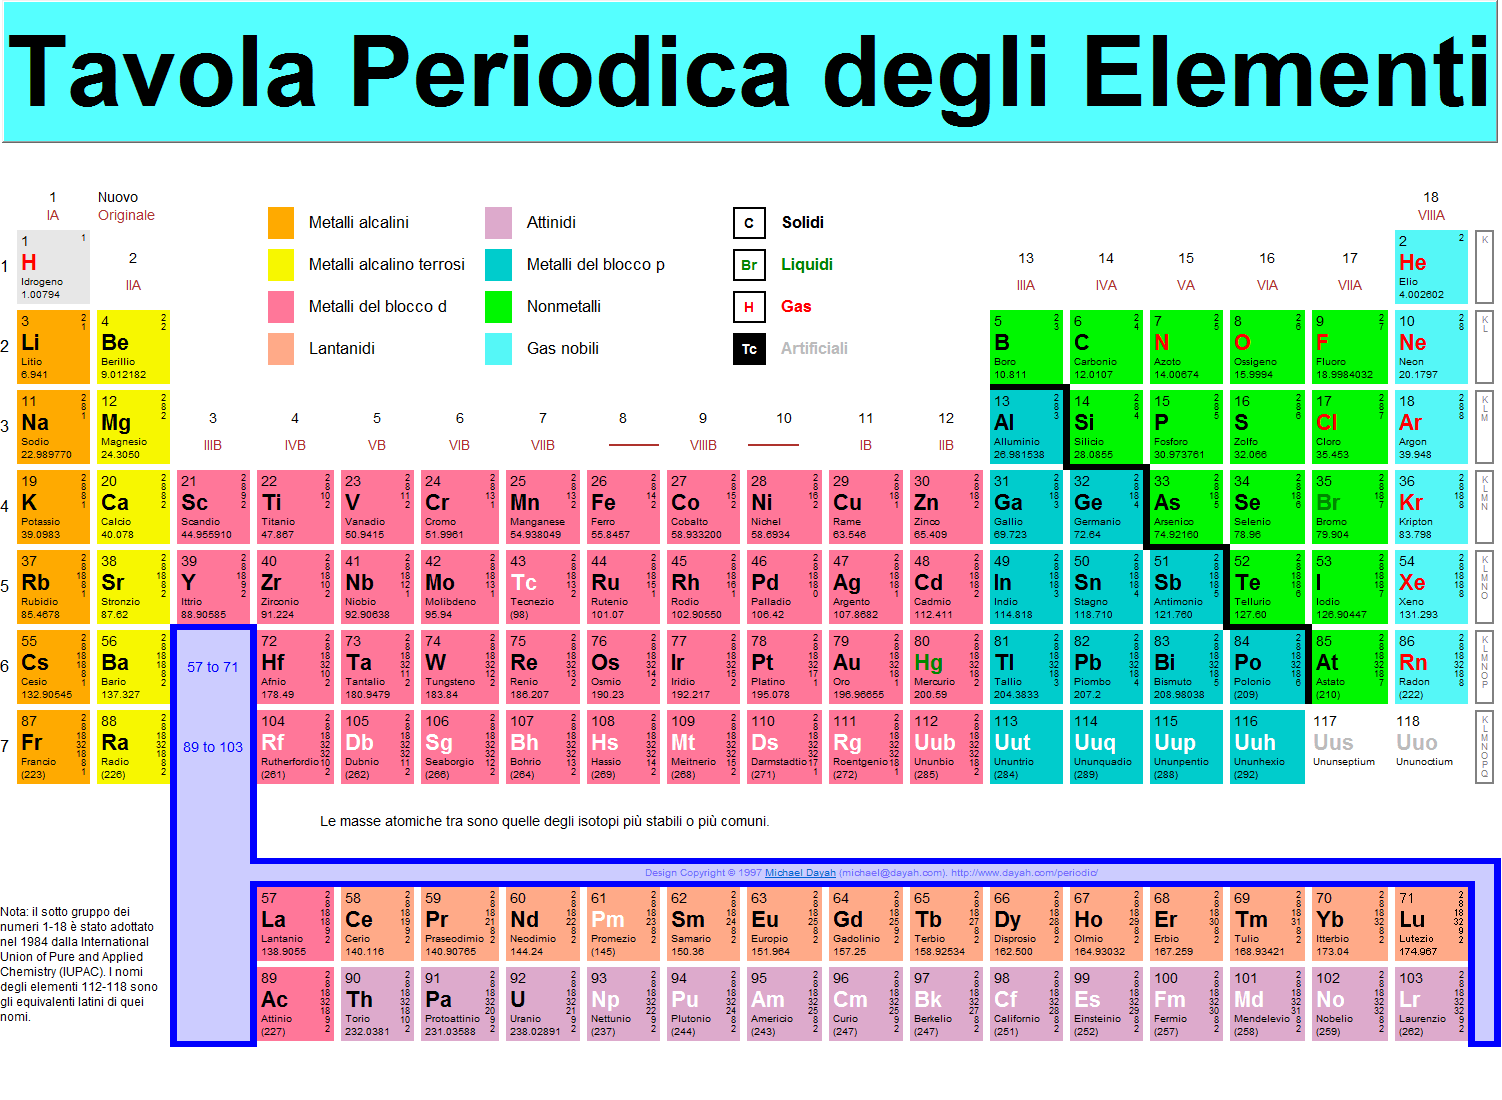 Chimica. 4 nuovi elementi per la tavola periodica.